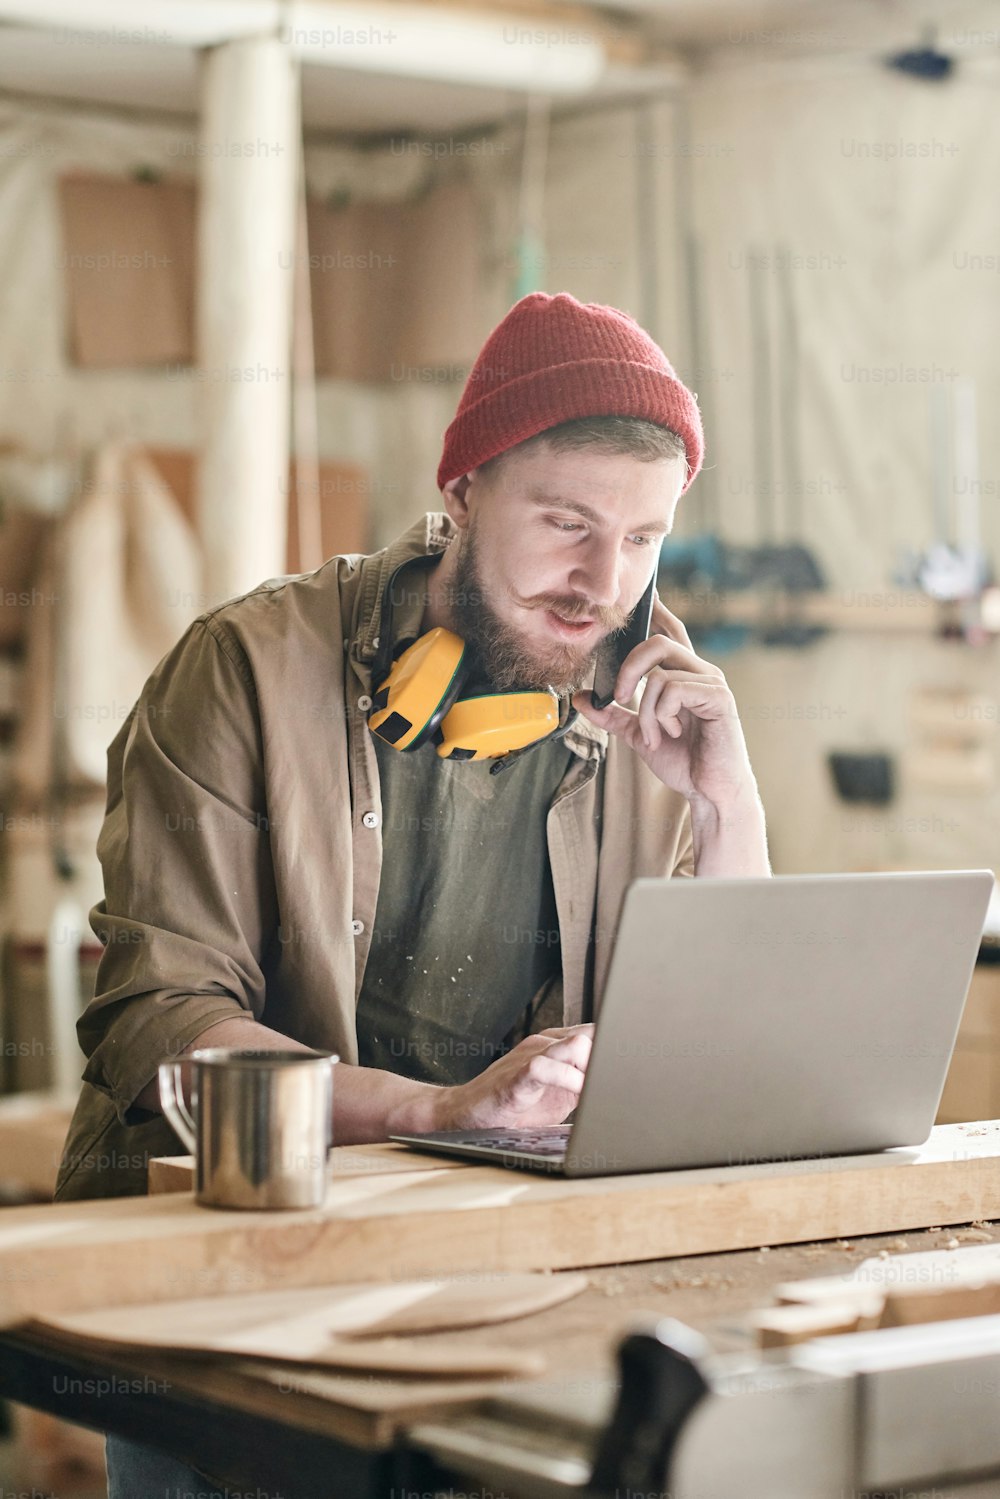 Moderner männlicher Schreiner mit Bart im Gesicht, der telefoniert, während er auf dem Laptop in der Holzwerkstatt tippt